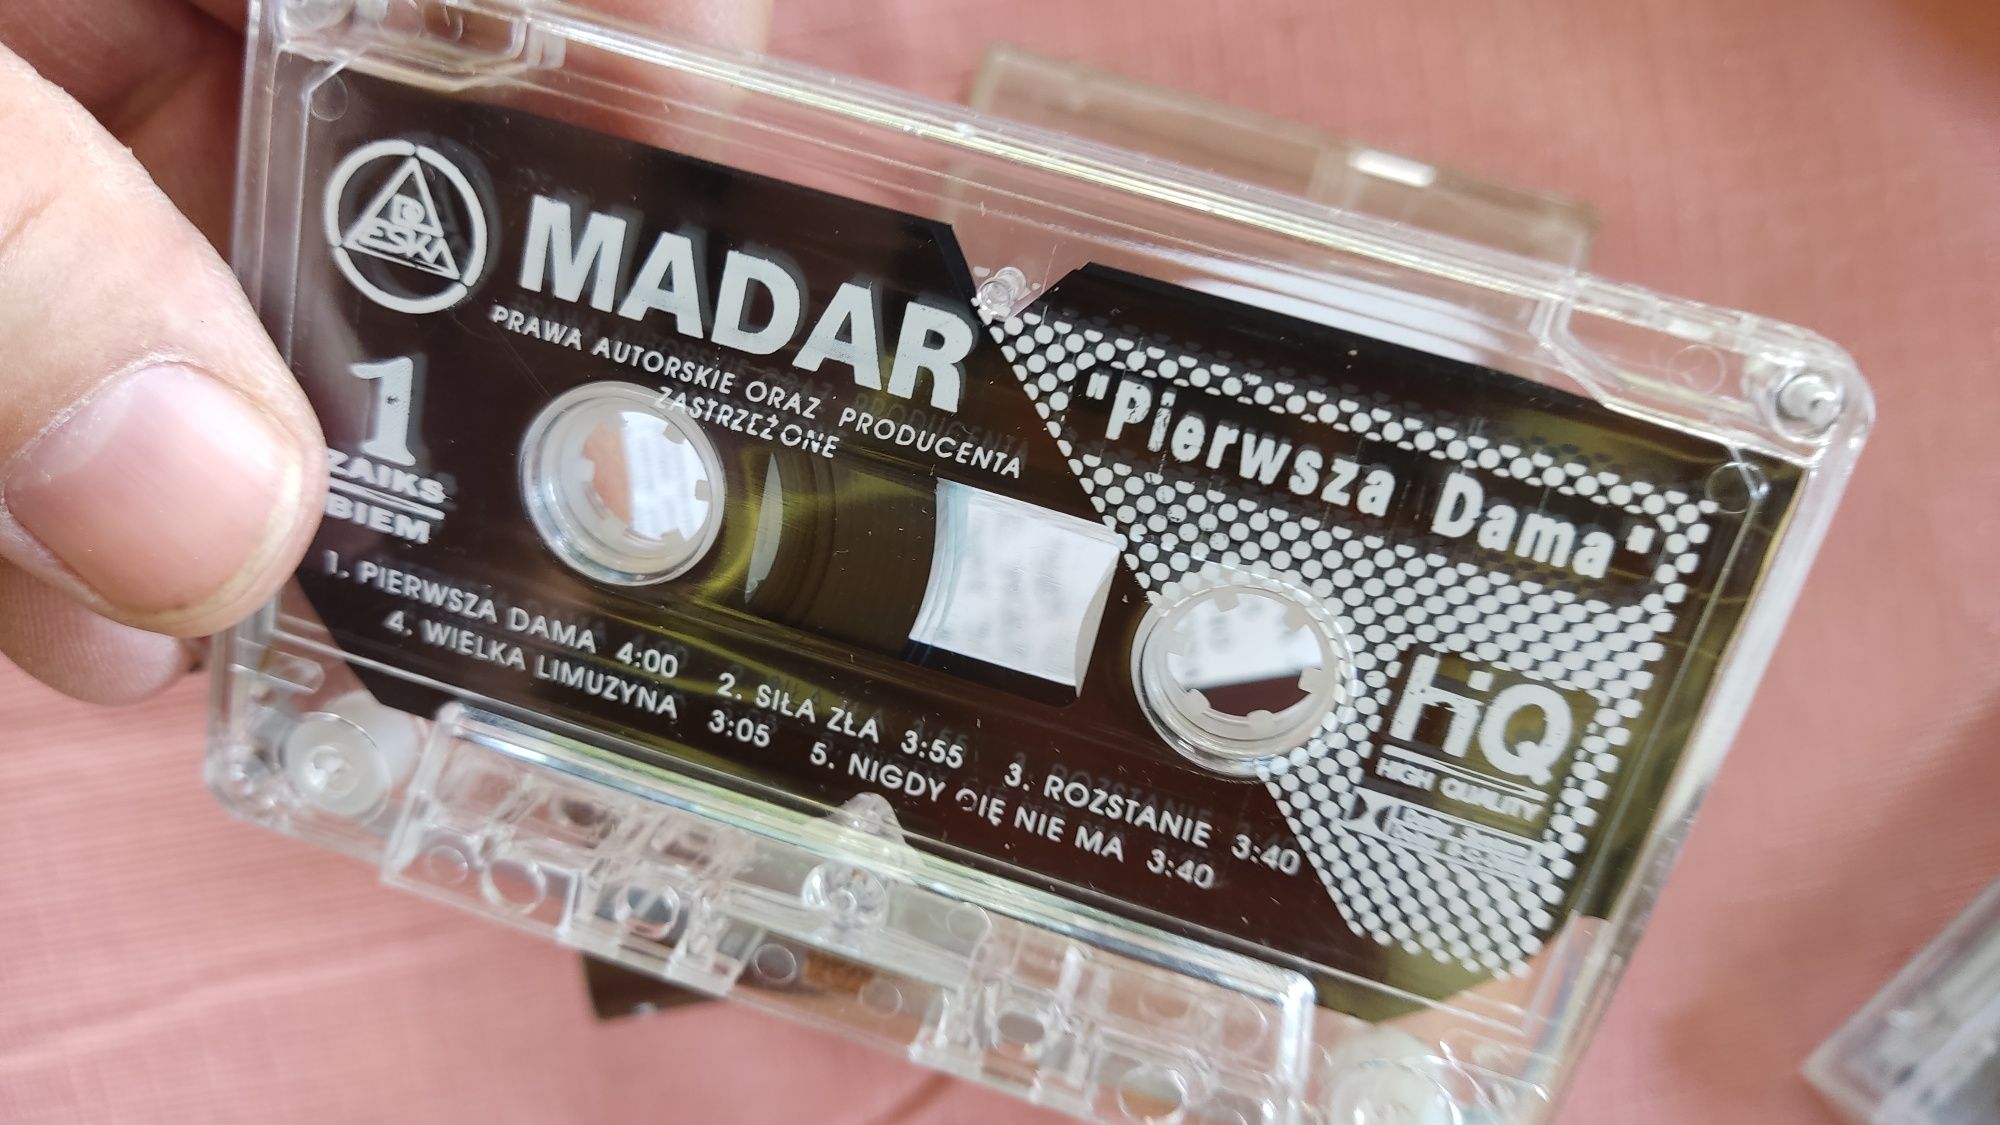 Madar Pierwsza dama kaseta audio disco polo